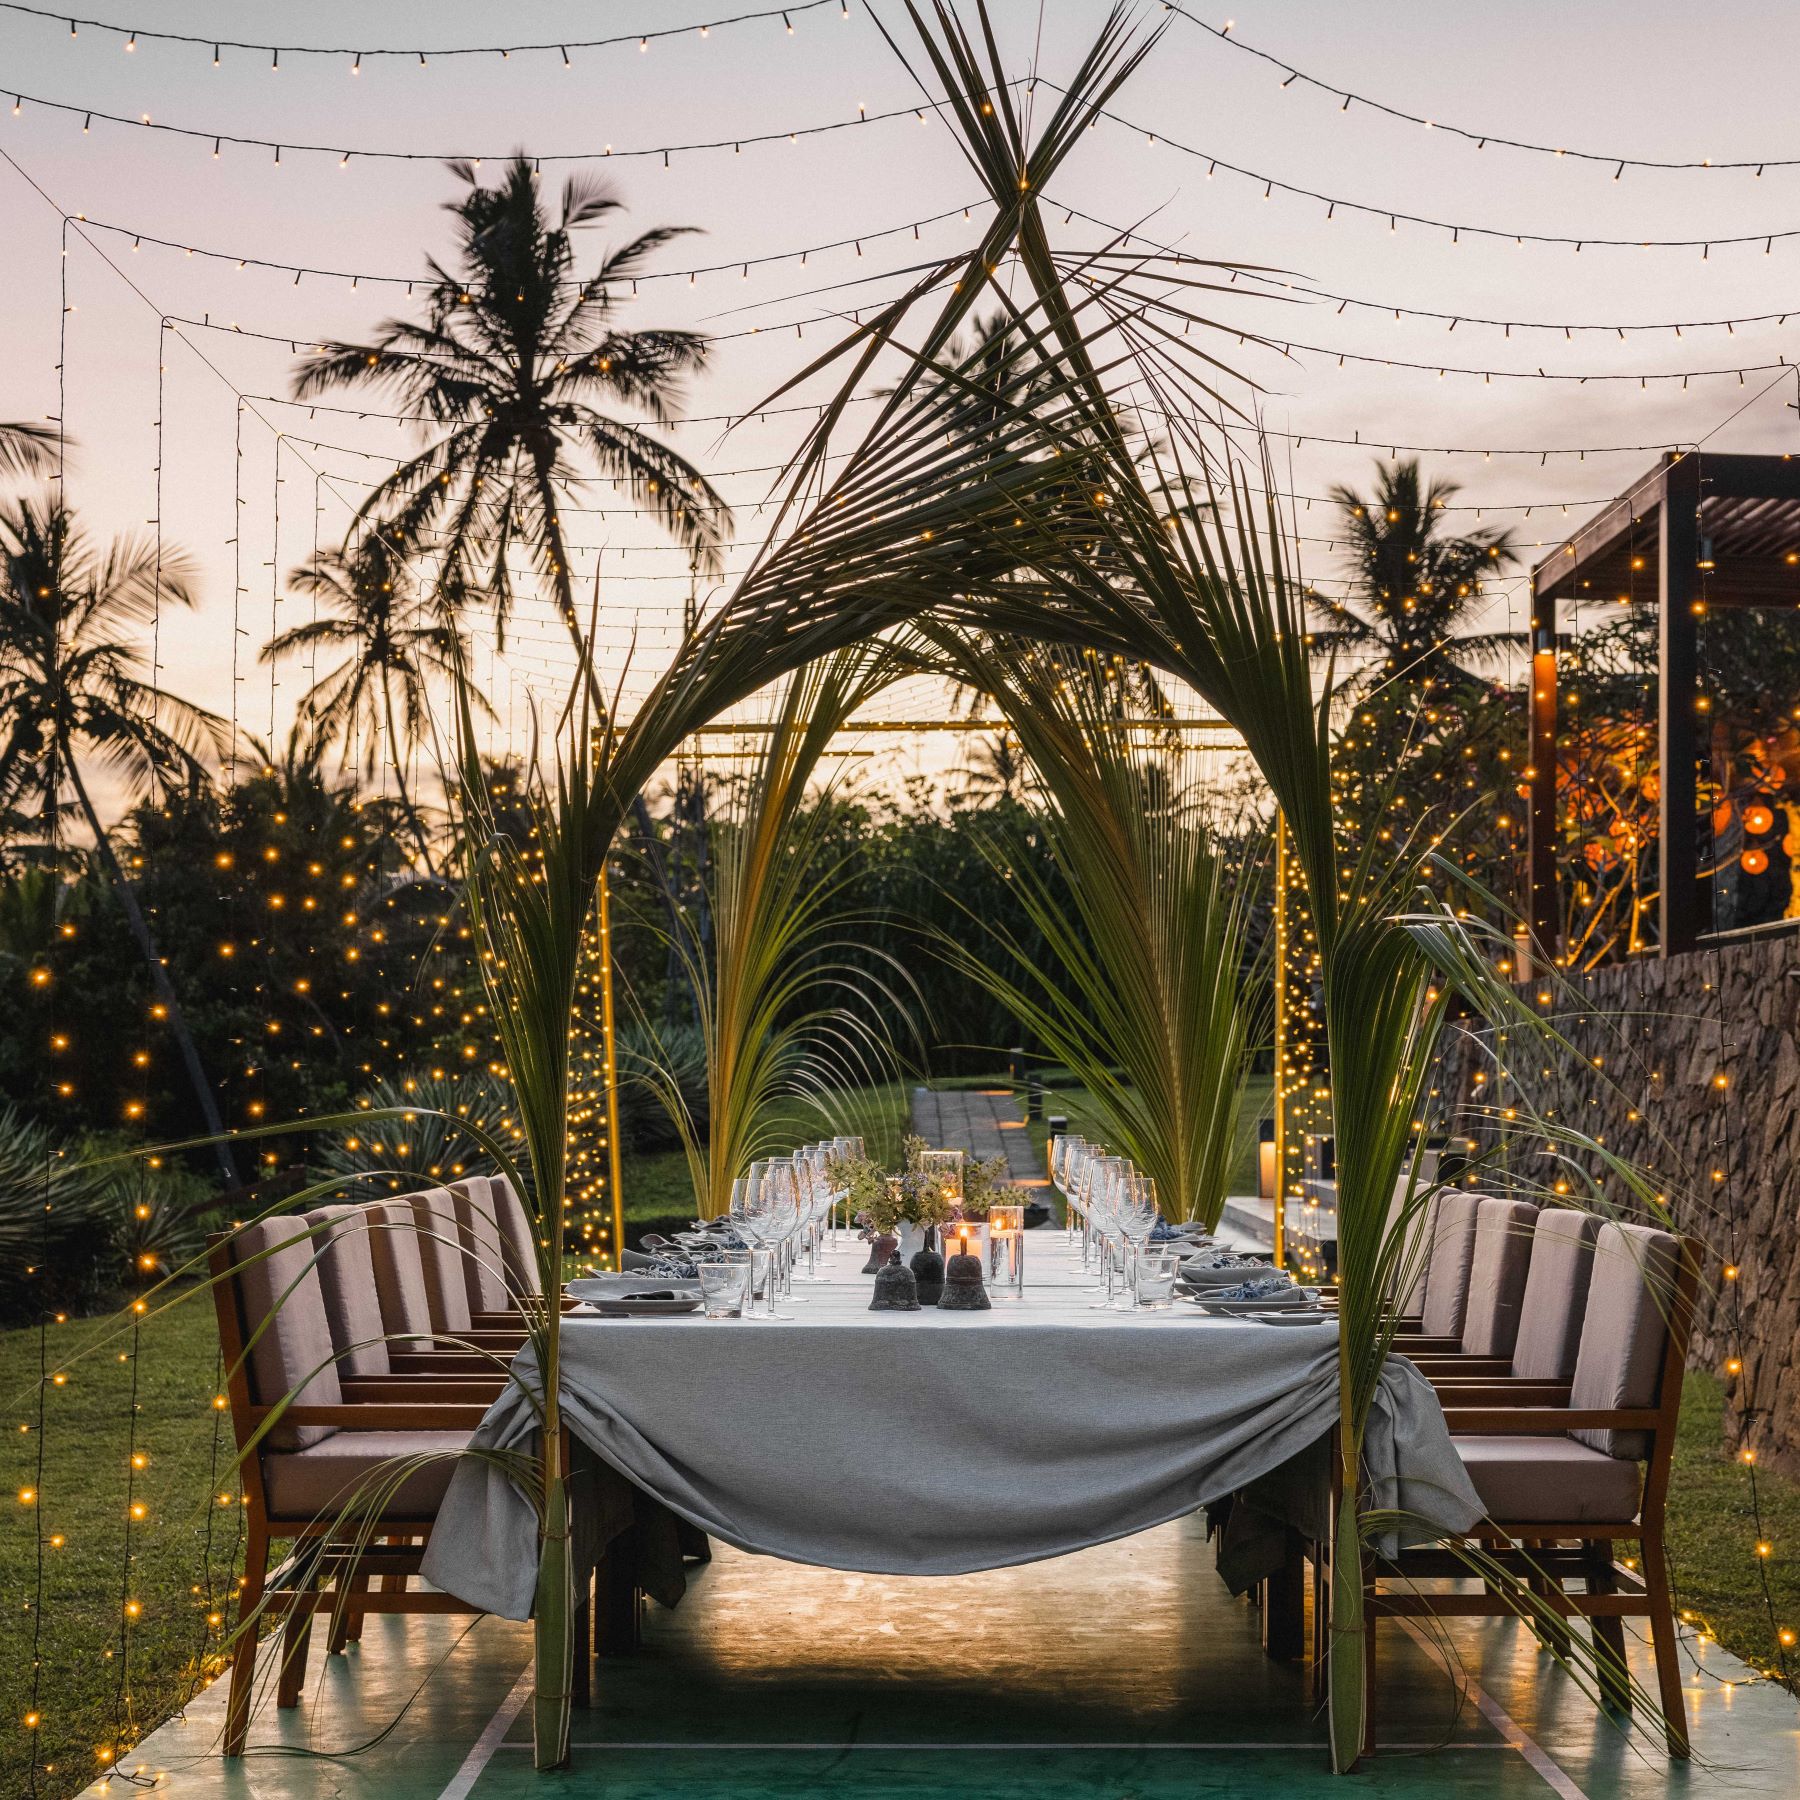 ANI Sri Lanka - Dining - Fairy Tale Canopy Dinner Dusk